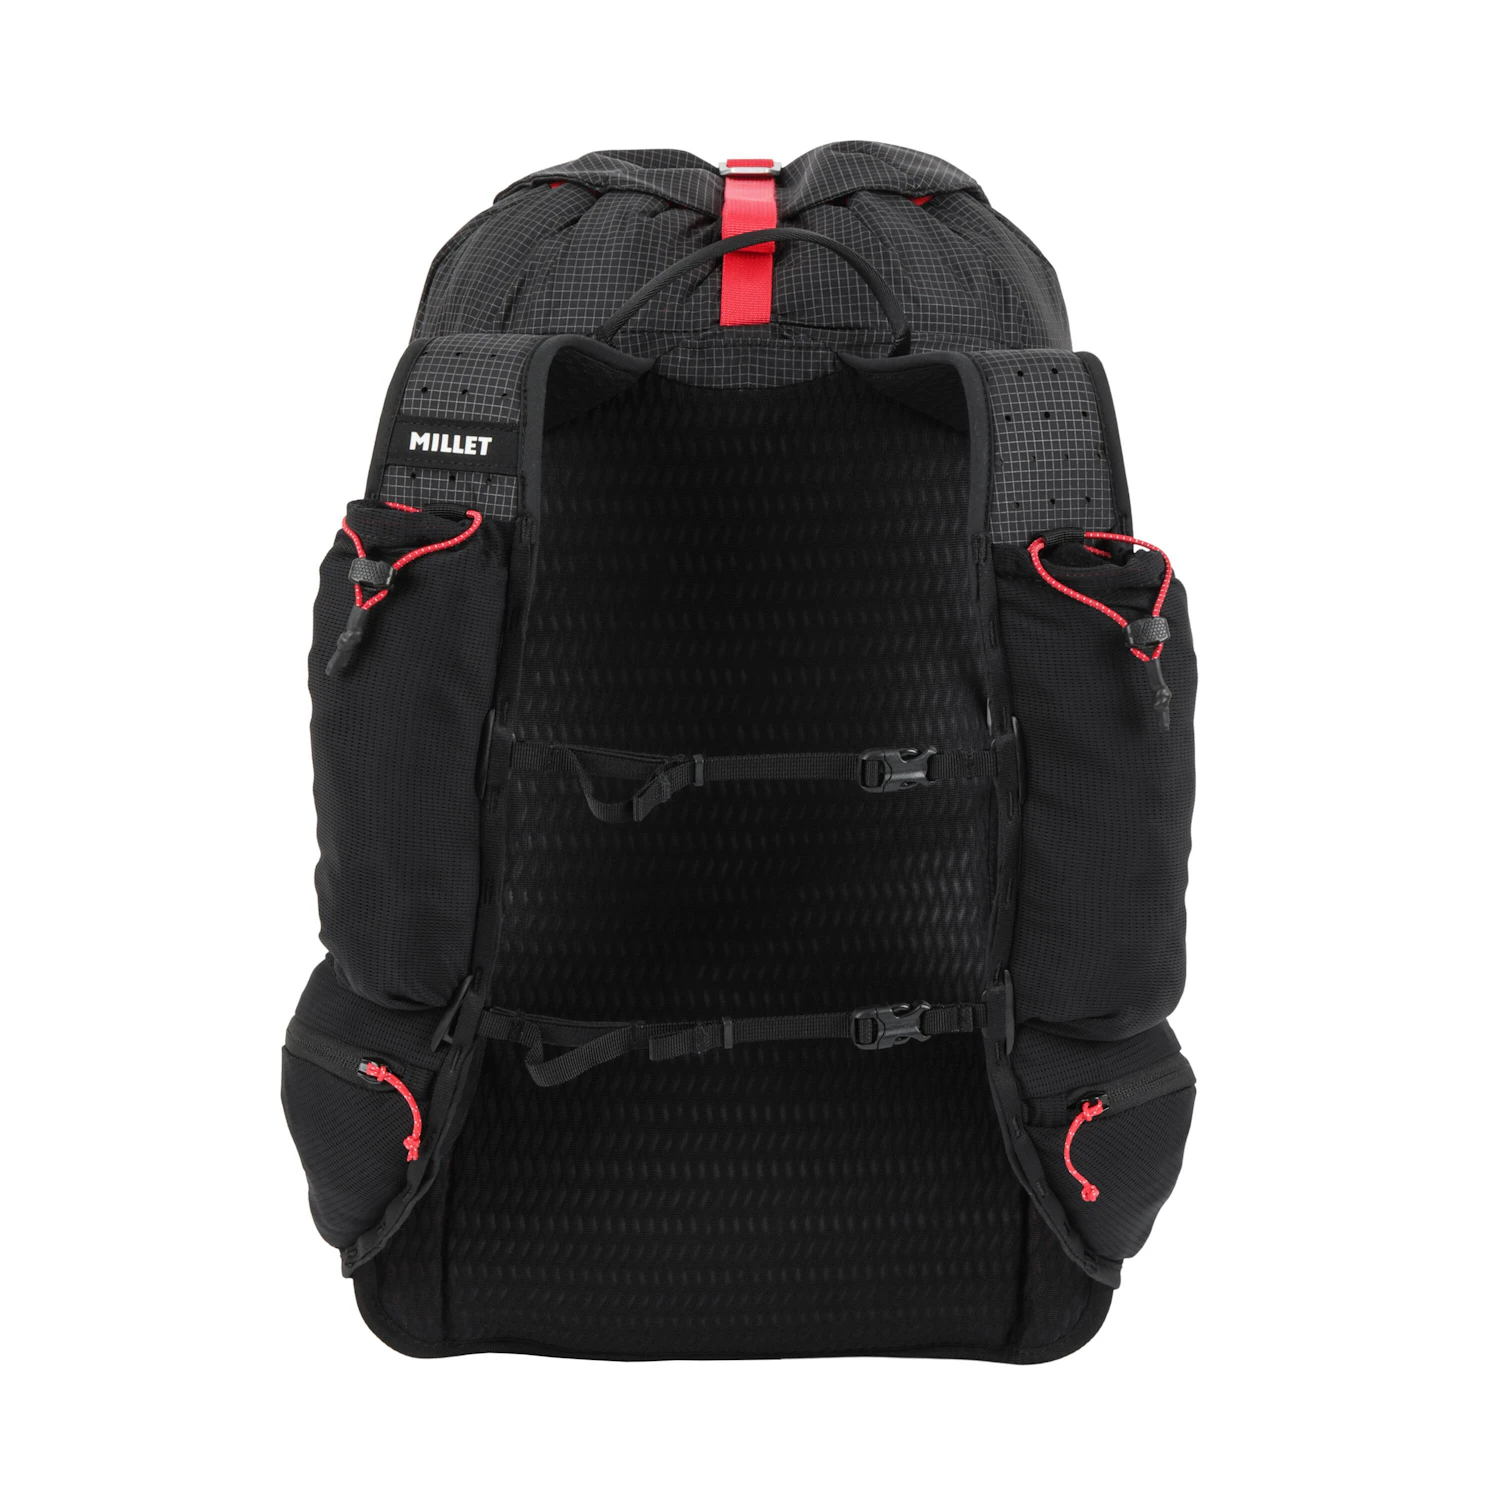 25L以上の容量を持つバックパックとしては軽く、前面が小容量のバッグに多いメッシュ使いでポケット充実の構造になっている